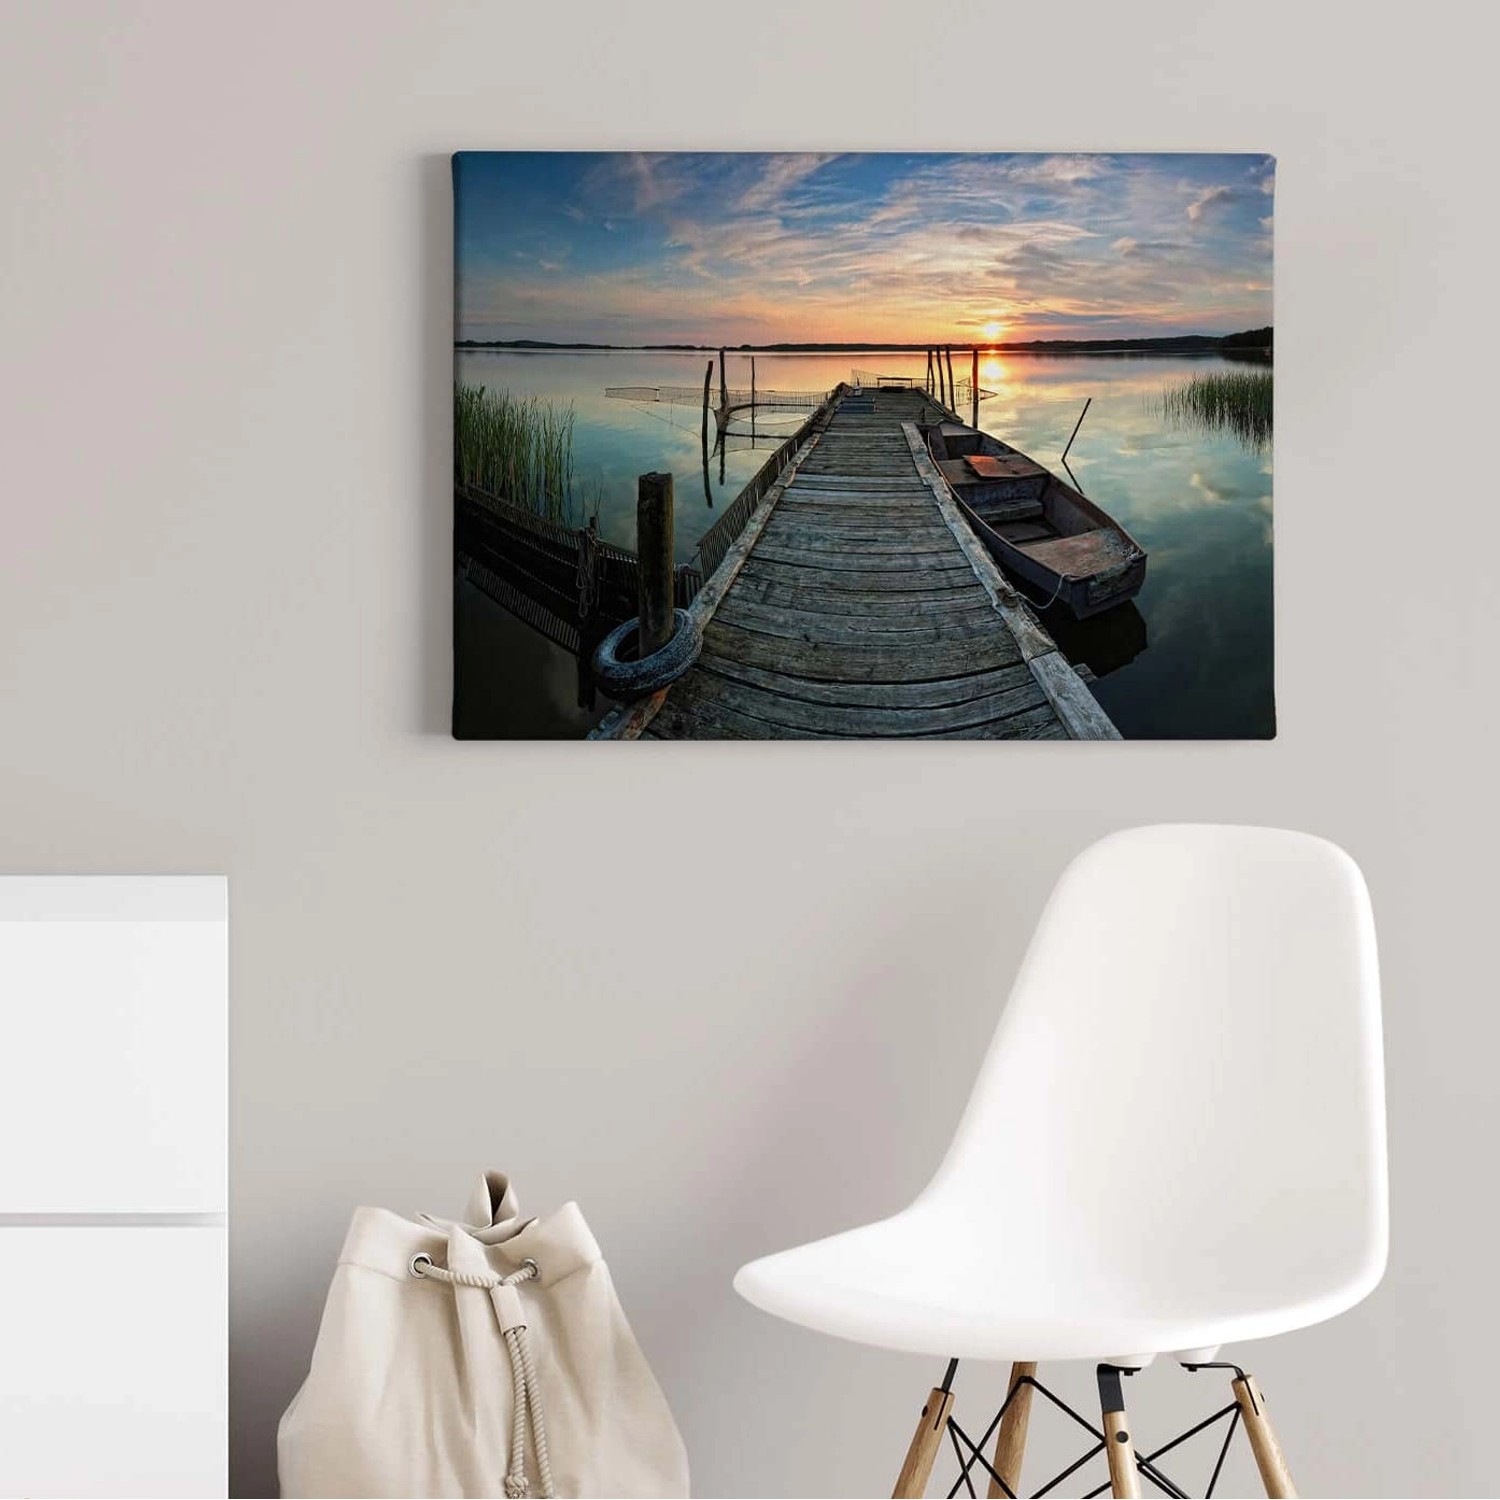 Bricoflor Leinwand Bild Mit Steg Ins Wasser See Wandbild Mit Sonnenuntergang Für Badezimmer Und Schlafzimmer Romantische